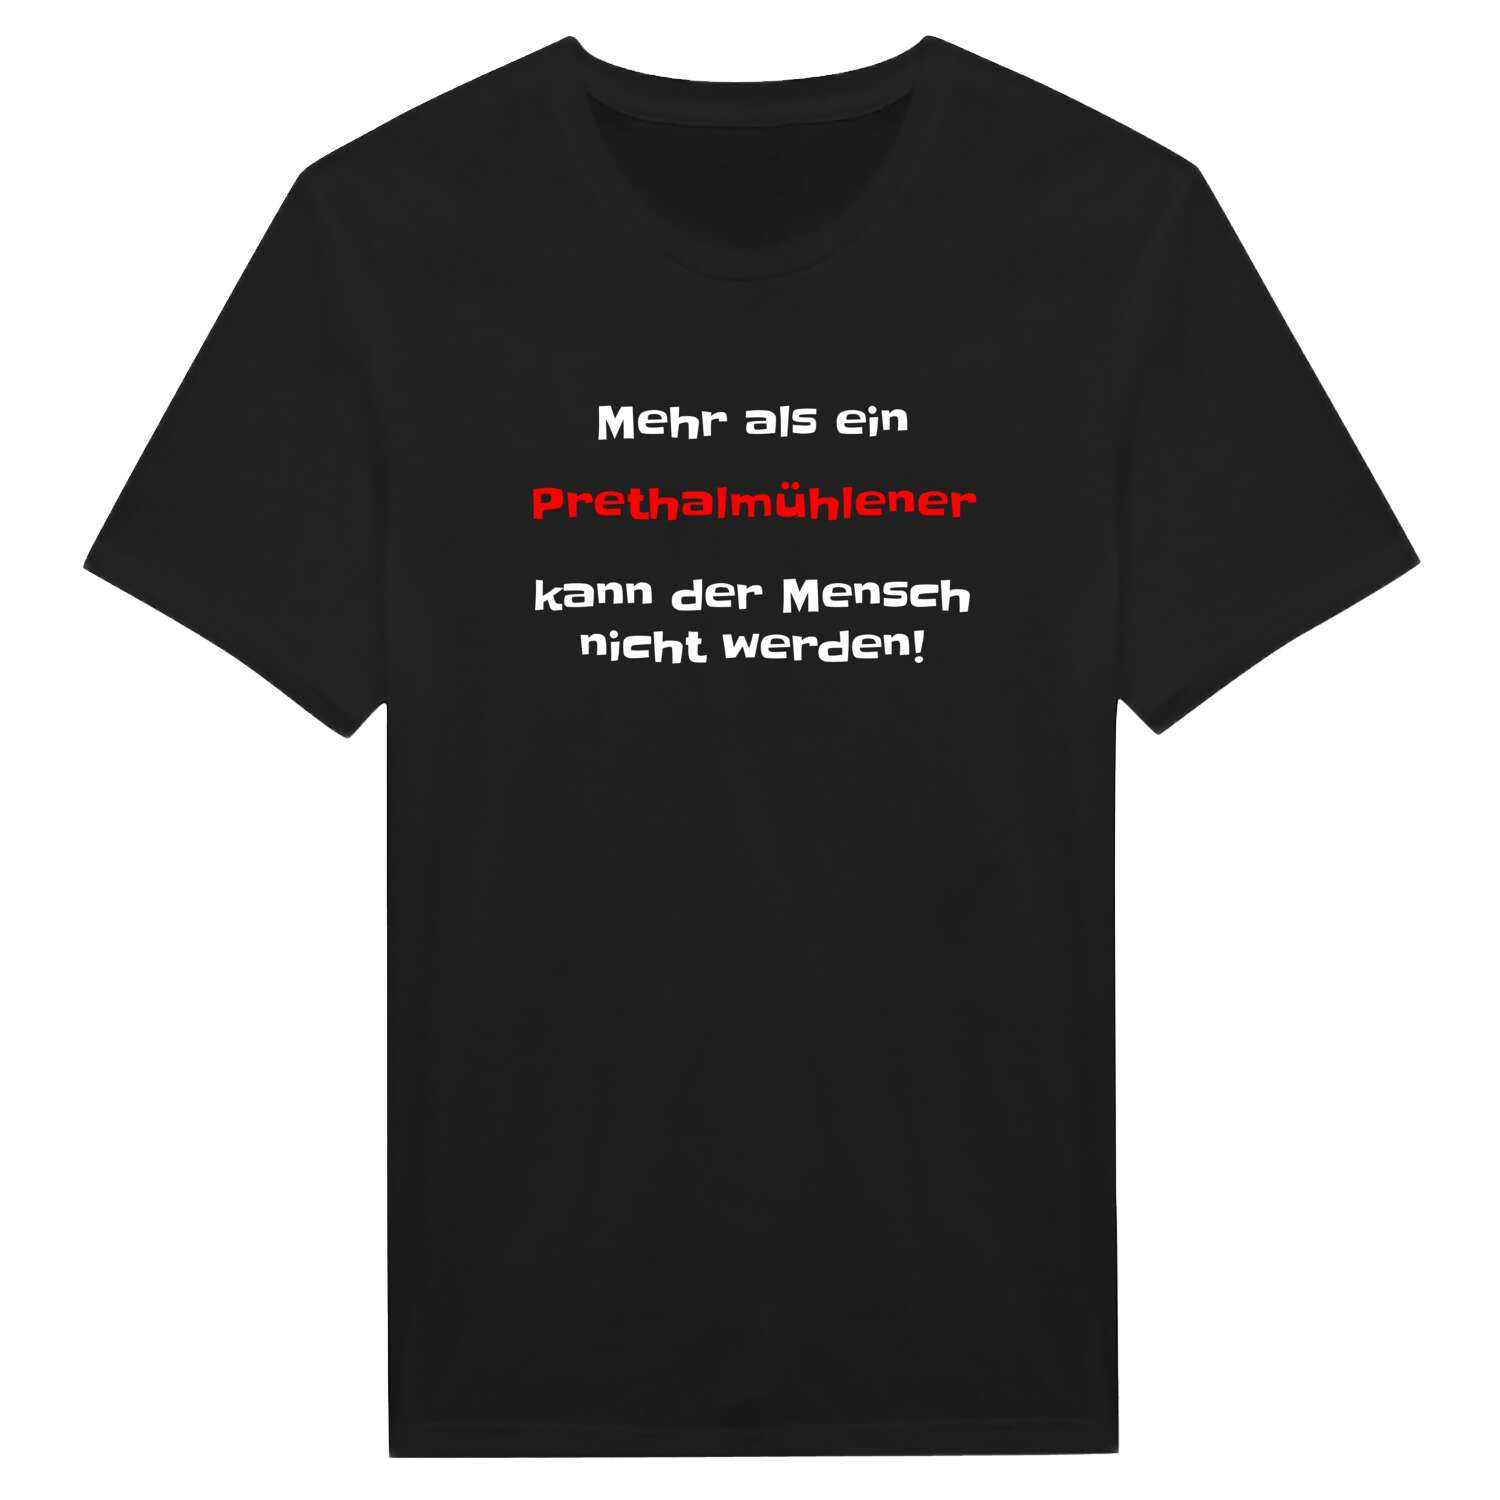 Prethalmühle T-Shirt »Mehr als ein«